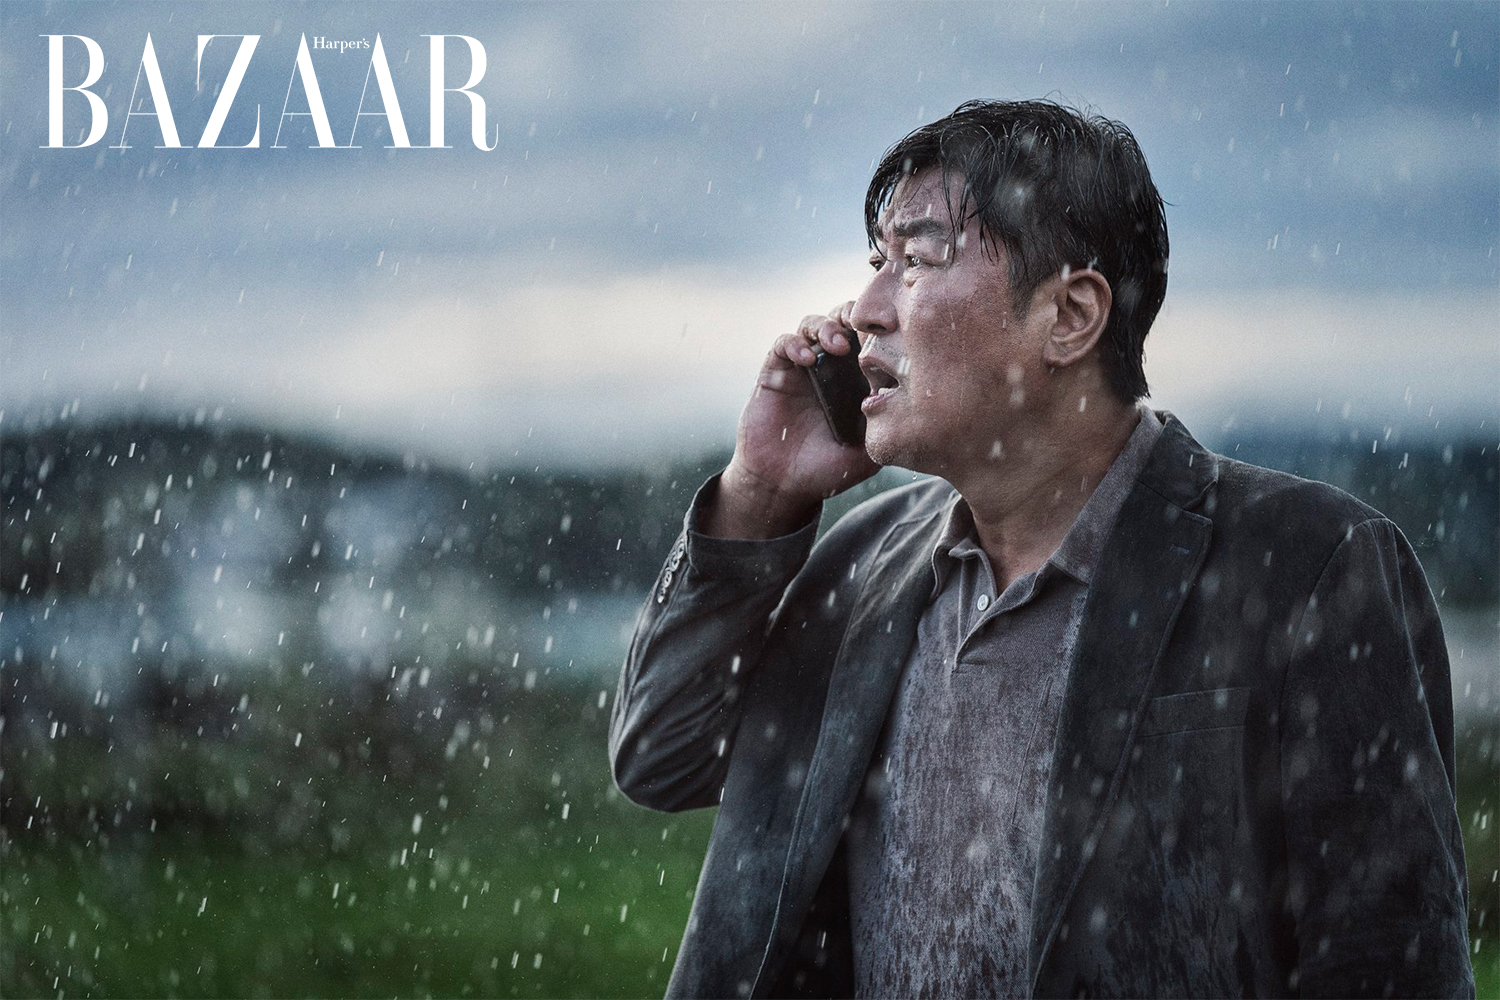 Harpers Bazaar cast ha canh khan cap 01 - Điểm danh dàn cast “khủng” trong phim bom tấn Hạ Cánh Khẩn Cấp